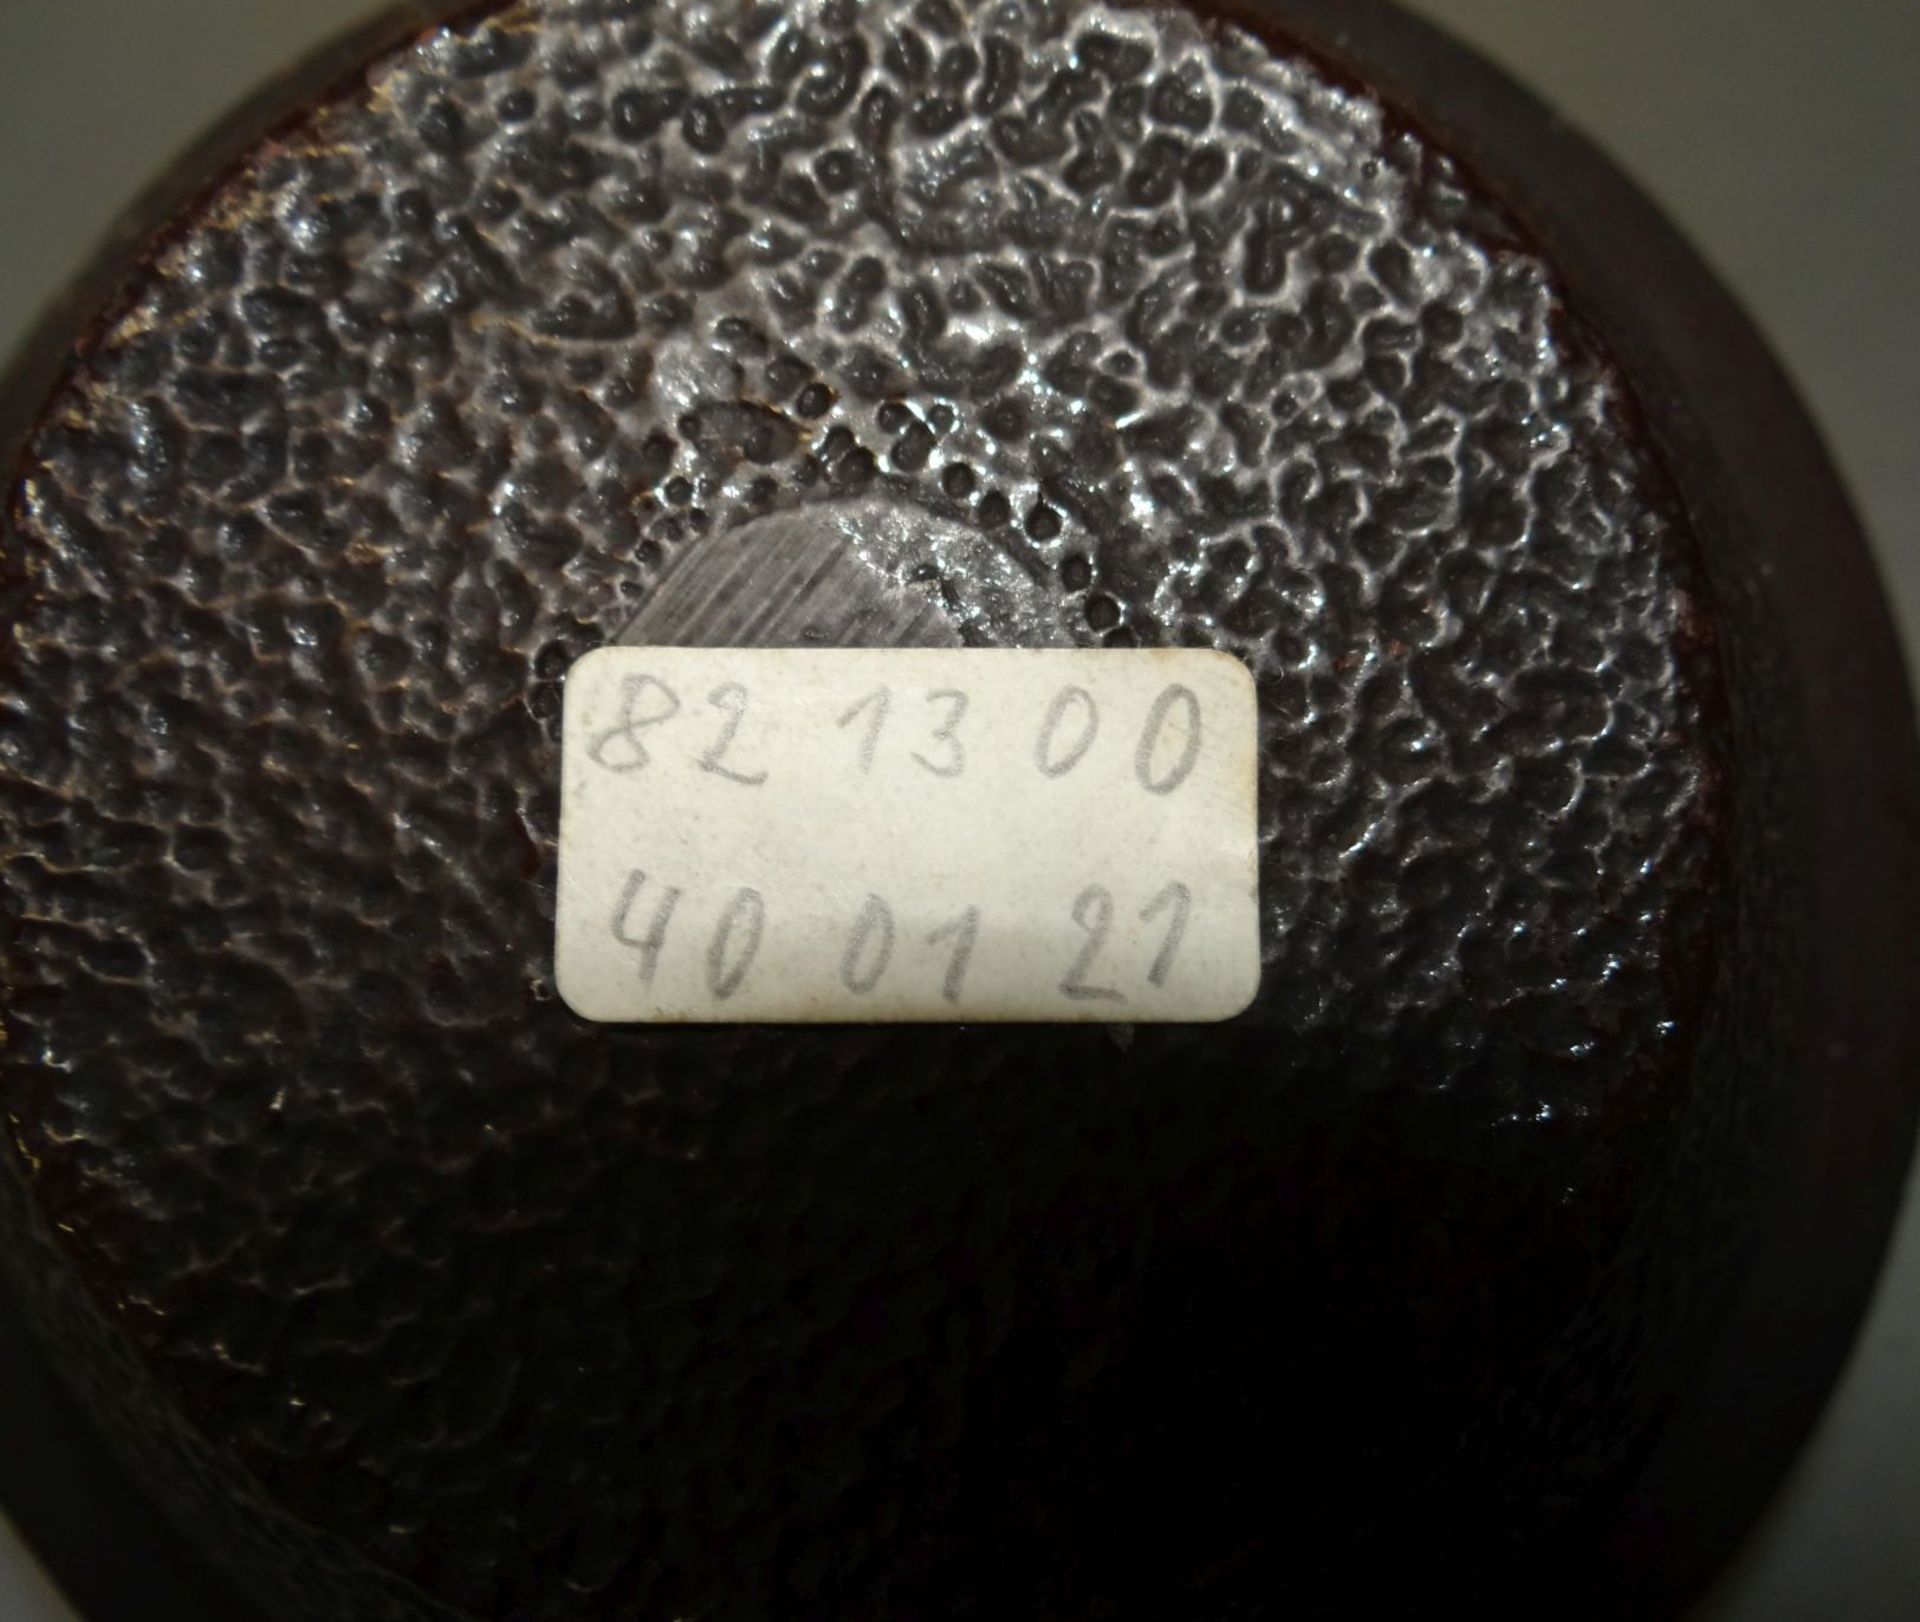 kl. japanische Eisen-Teekanne mit Filtereinsatz, neuwertig, mit Beschreibung, H-8 cm, für 1 Tass - Bild 6 aus 7